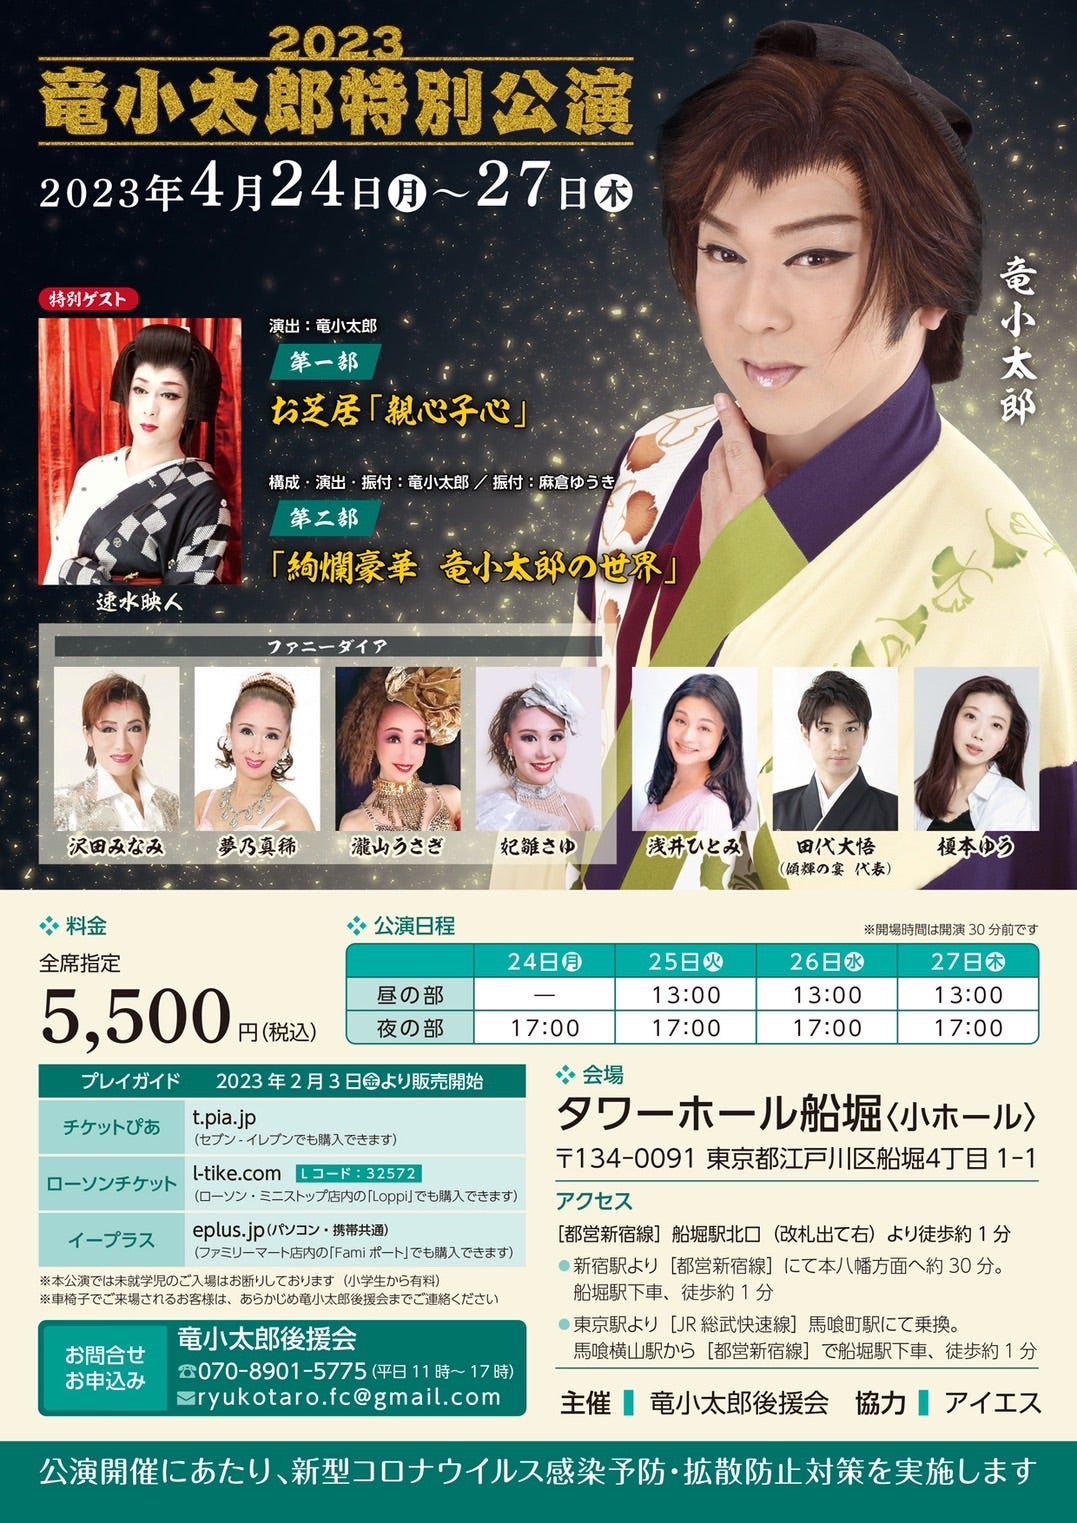 麻倉ゆうき＊役者だらけの日本舞踊教室「麻春会」のブログ新情報！舞台は続くよ、どこまでも！